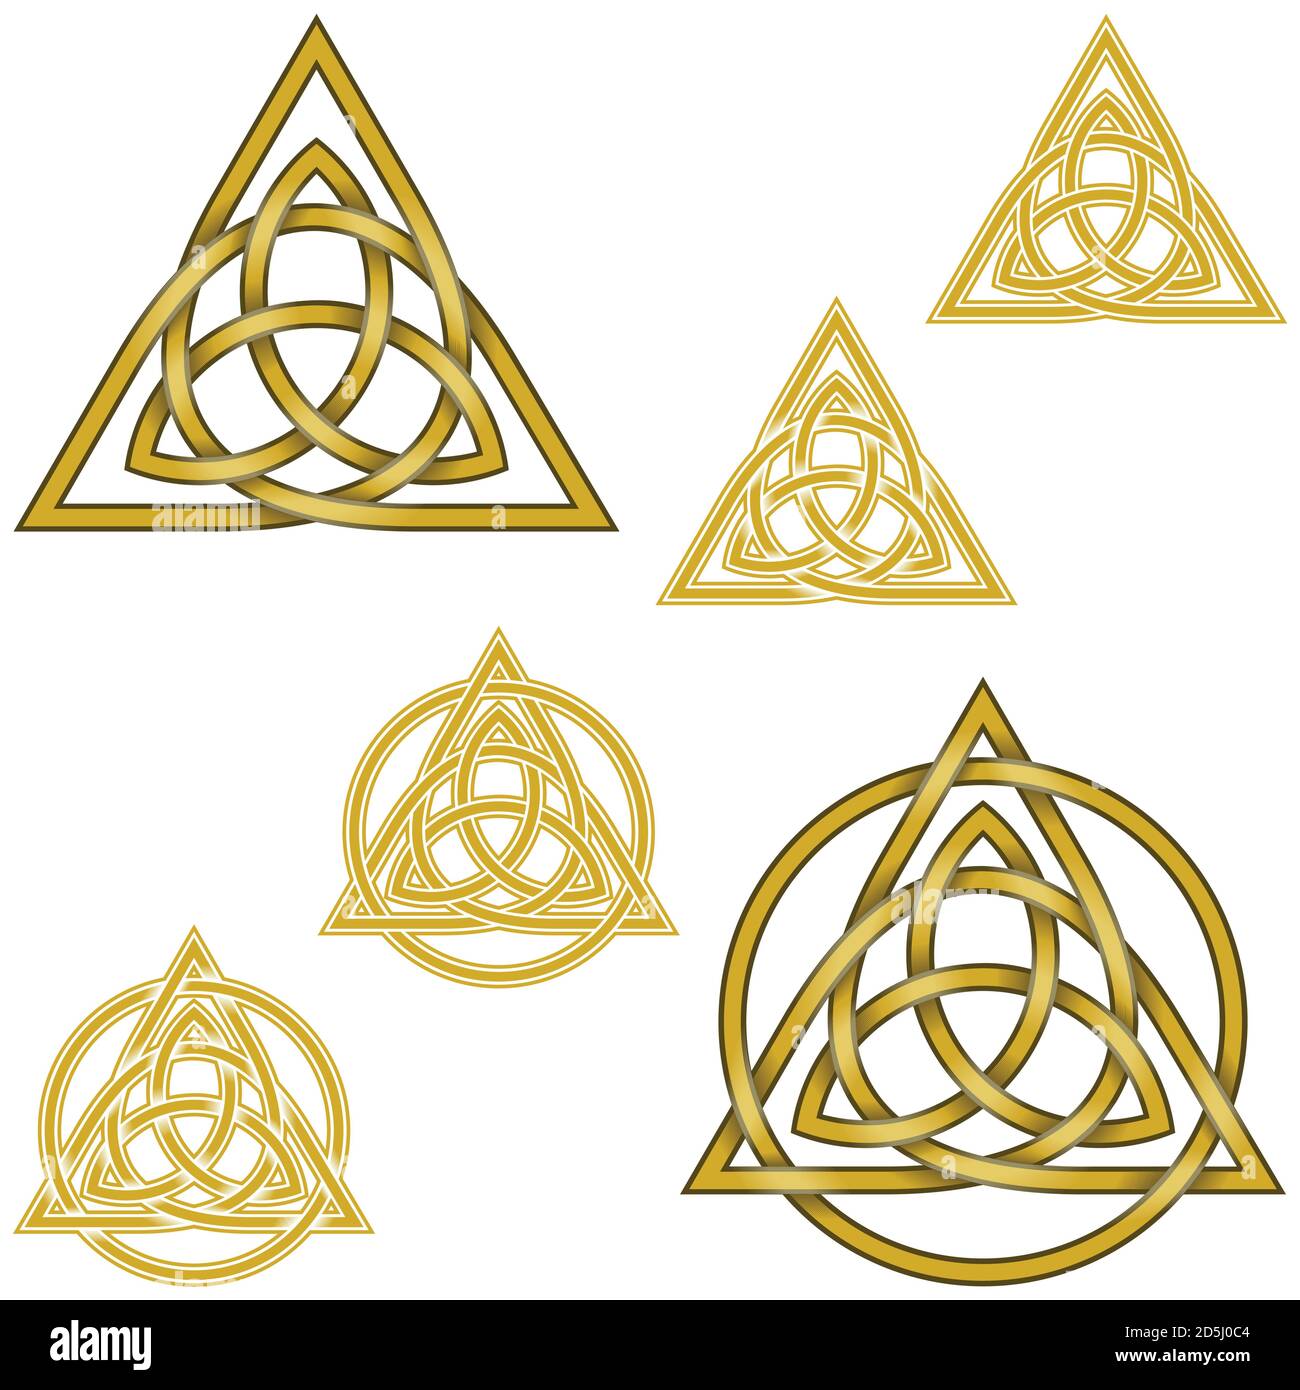 Vektor-Illustration des Symbols von Wicca eins in einem anderen, mit Kreis verflochten, alle auf weißem Hintergrund Stock Vektor